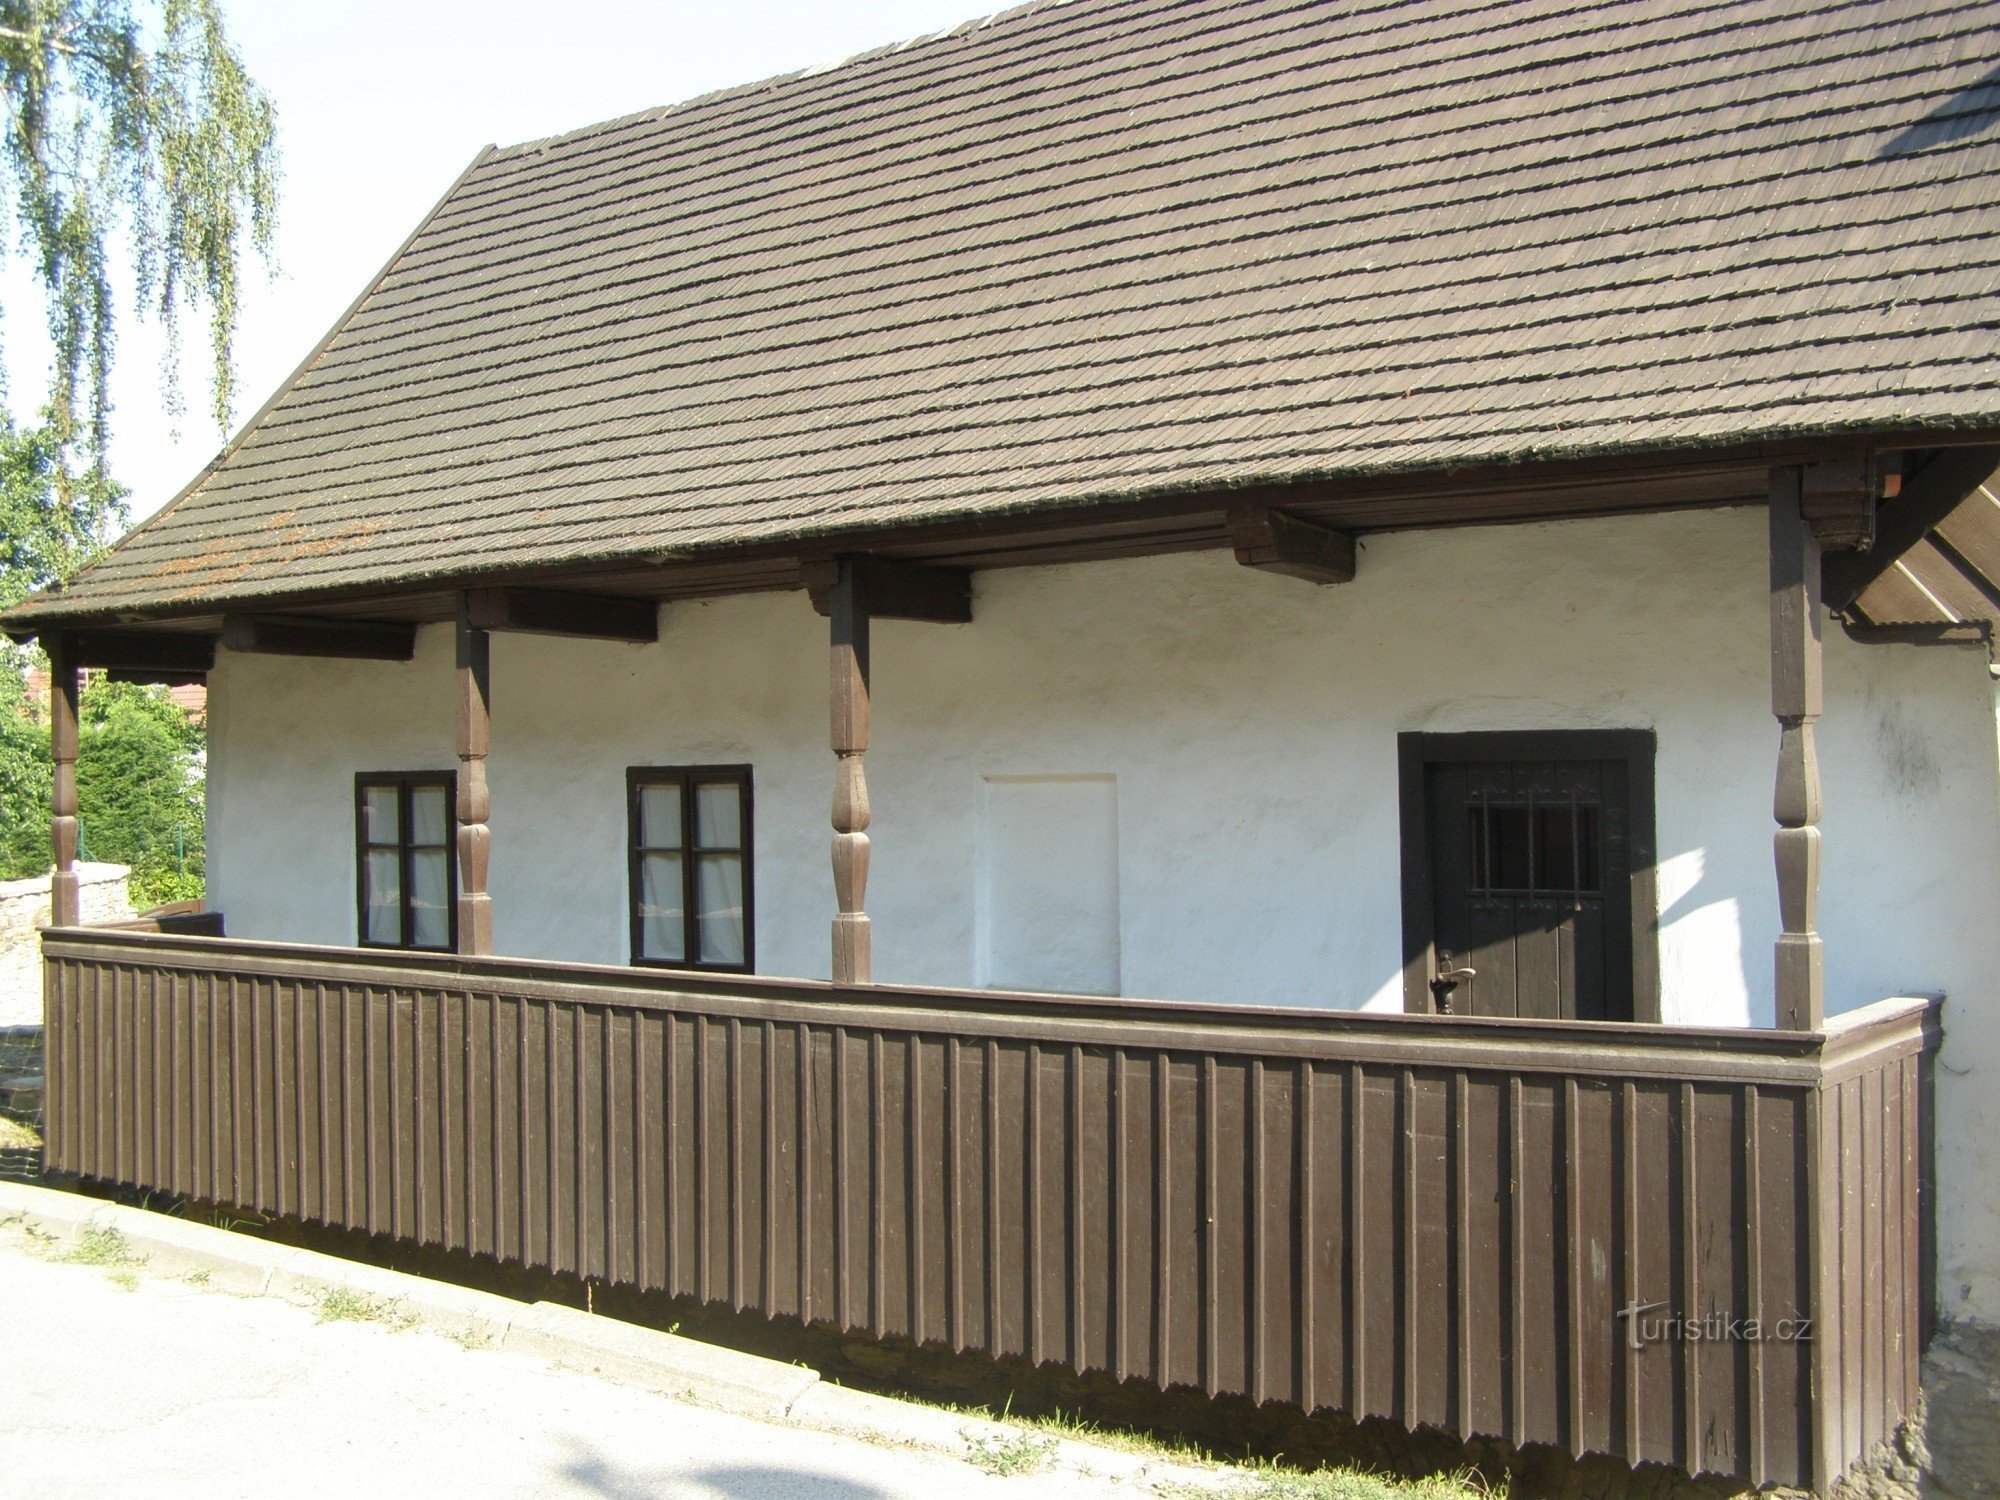 Dobruška - födelseplatsen för FLVěk (Heka)